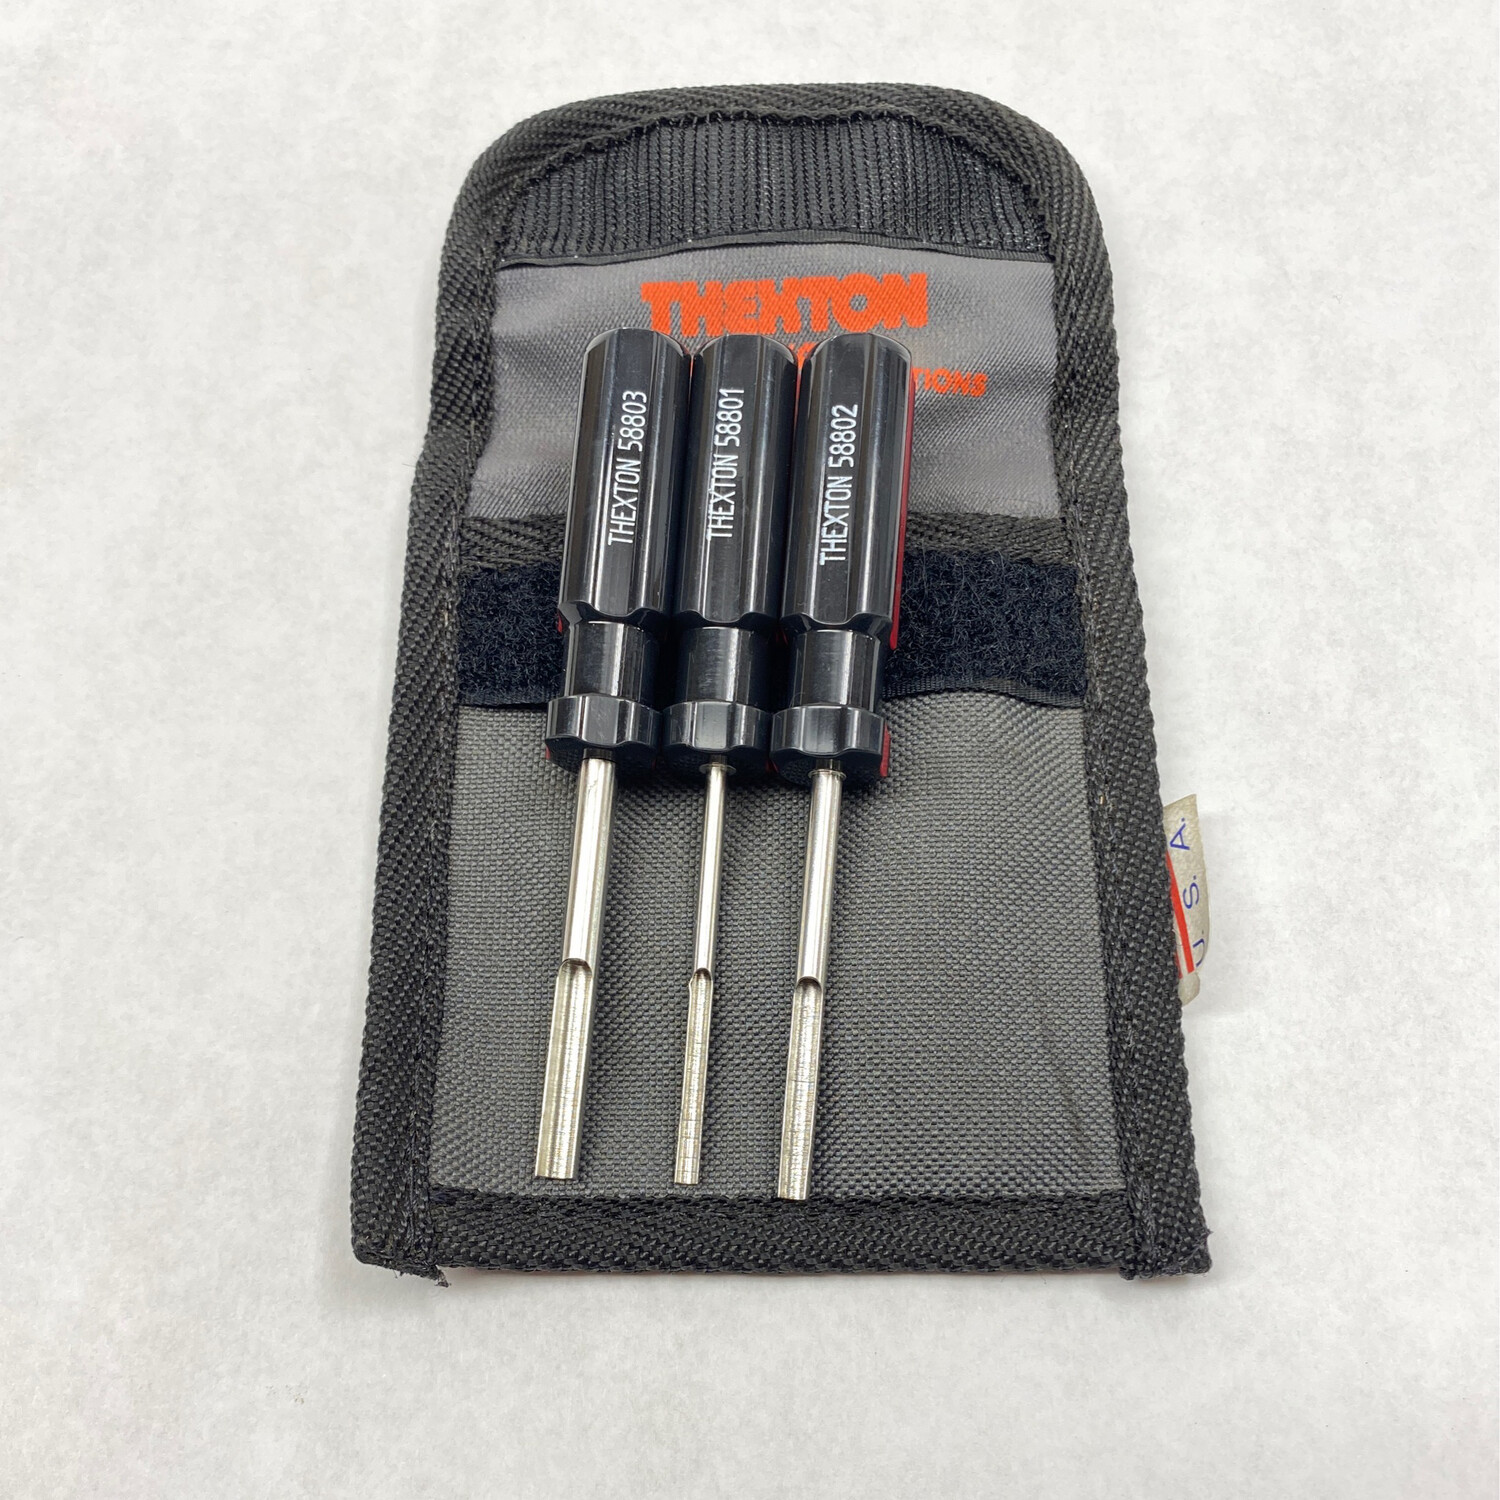 Thexton Terminal Release Tool Kit, 588